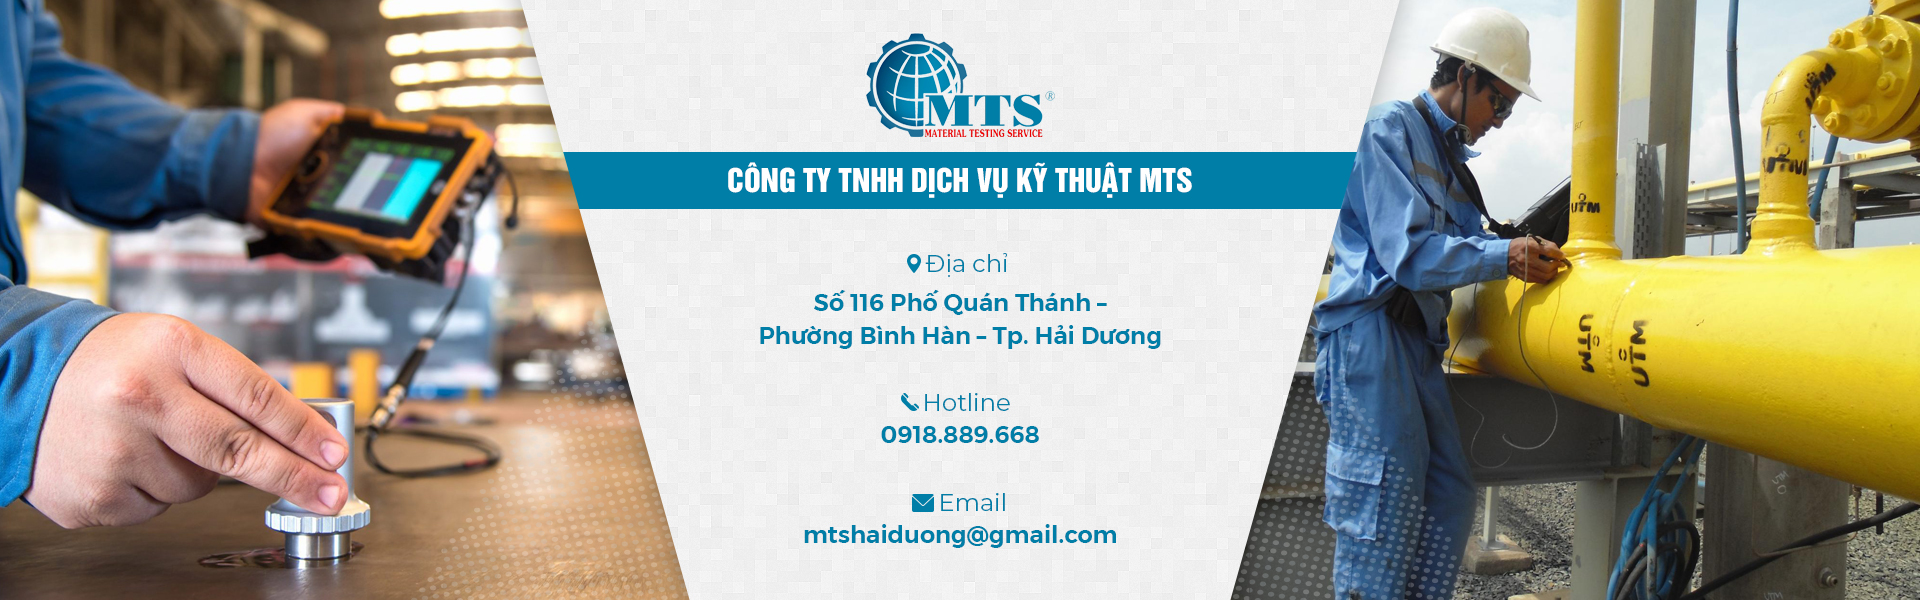 Công ty TNHH dịch vụ kỹ thuật MTS